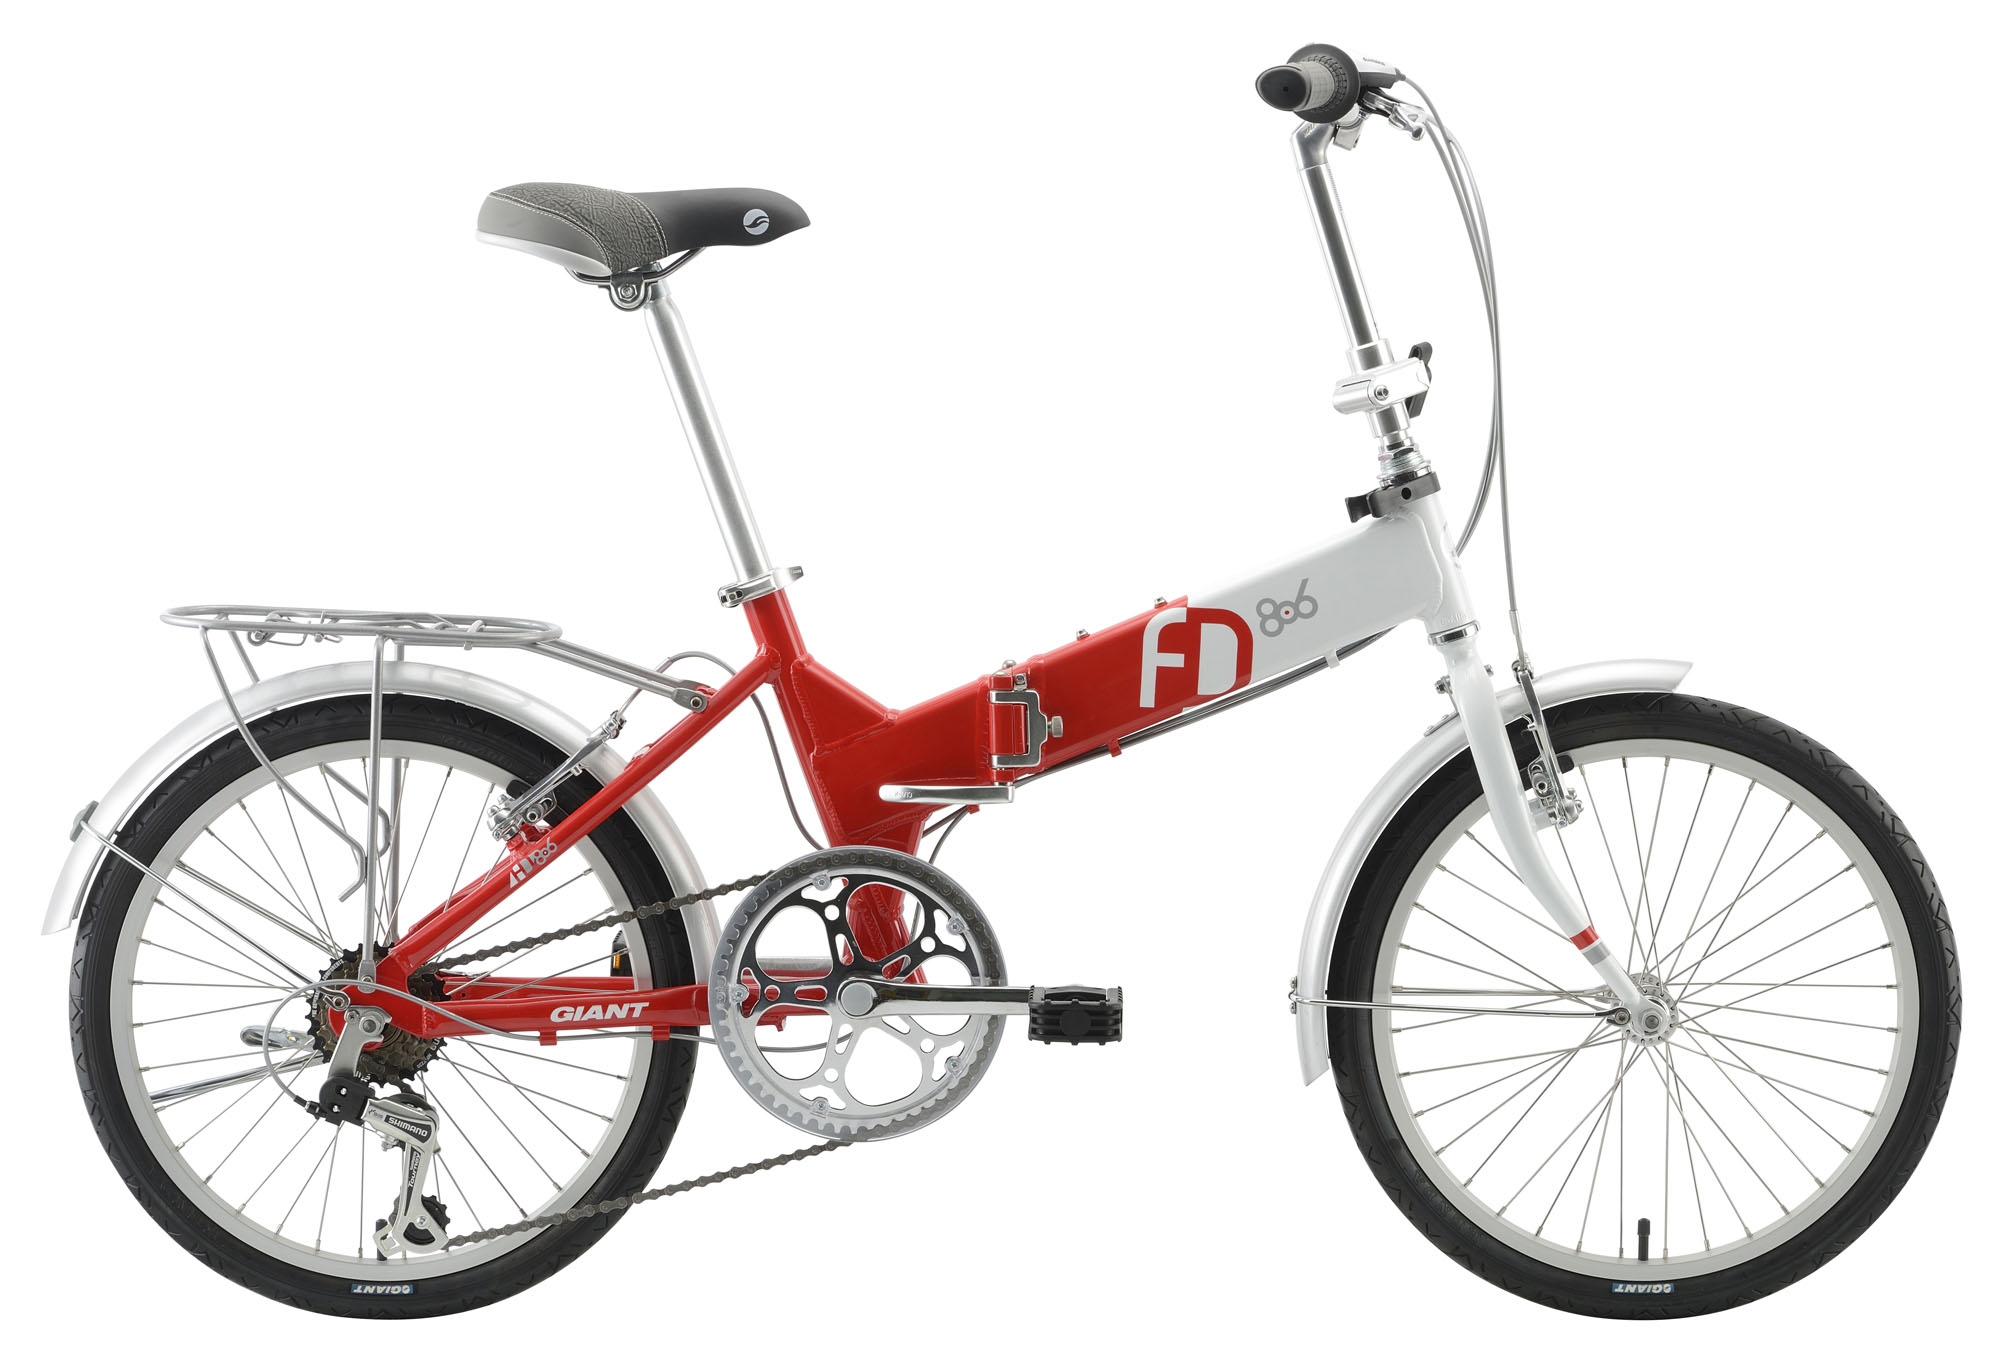 Xe đạp gấp Giant FD-806 2017 RED